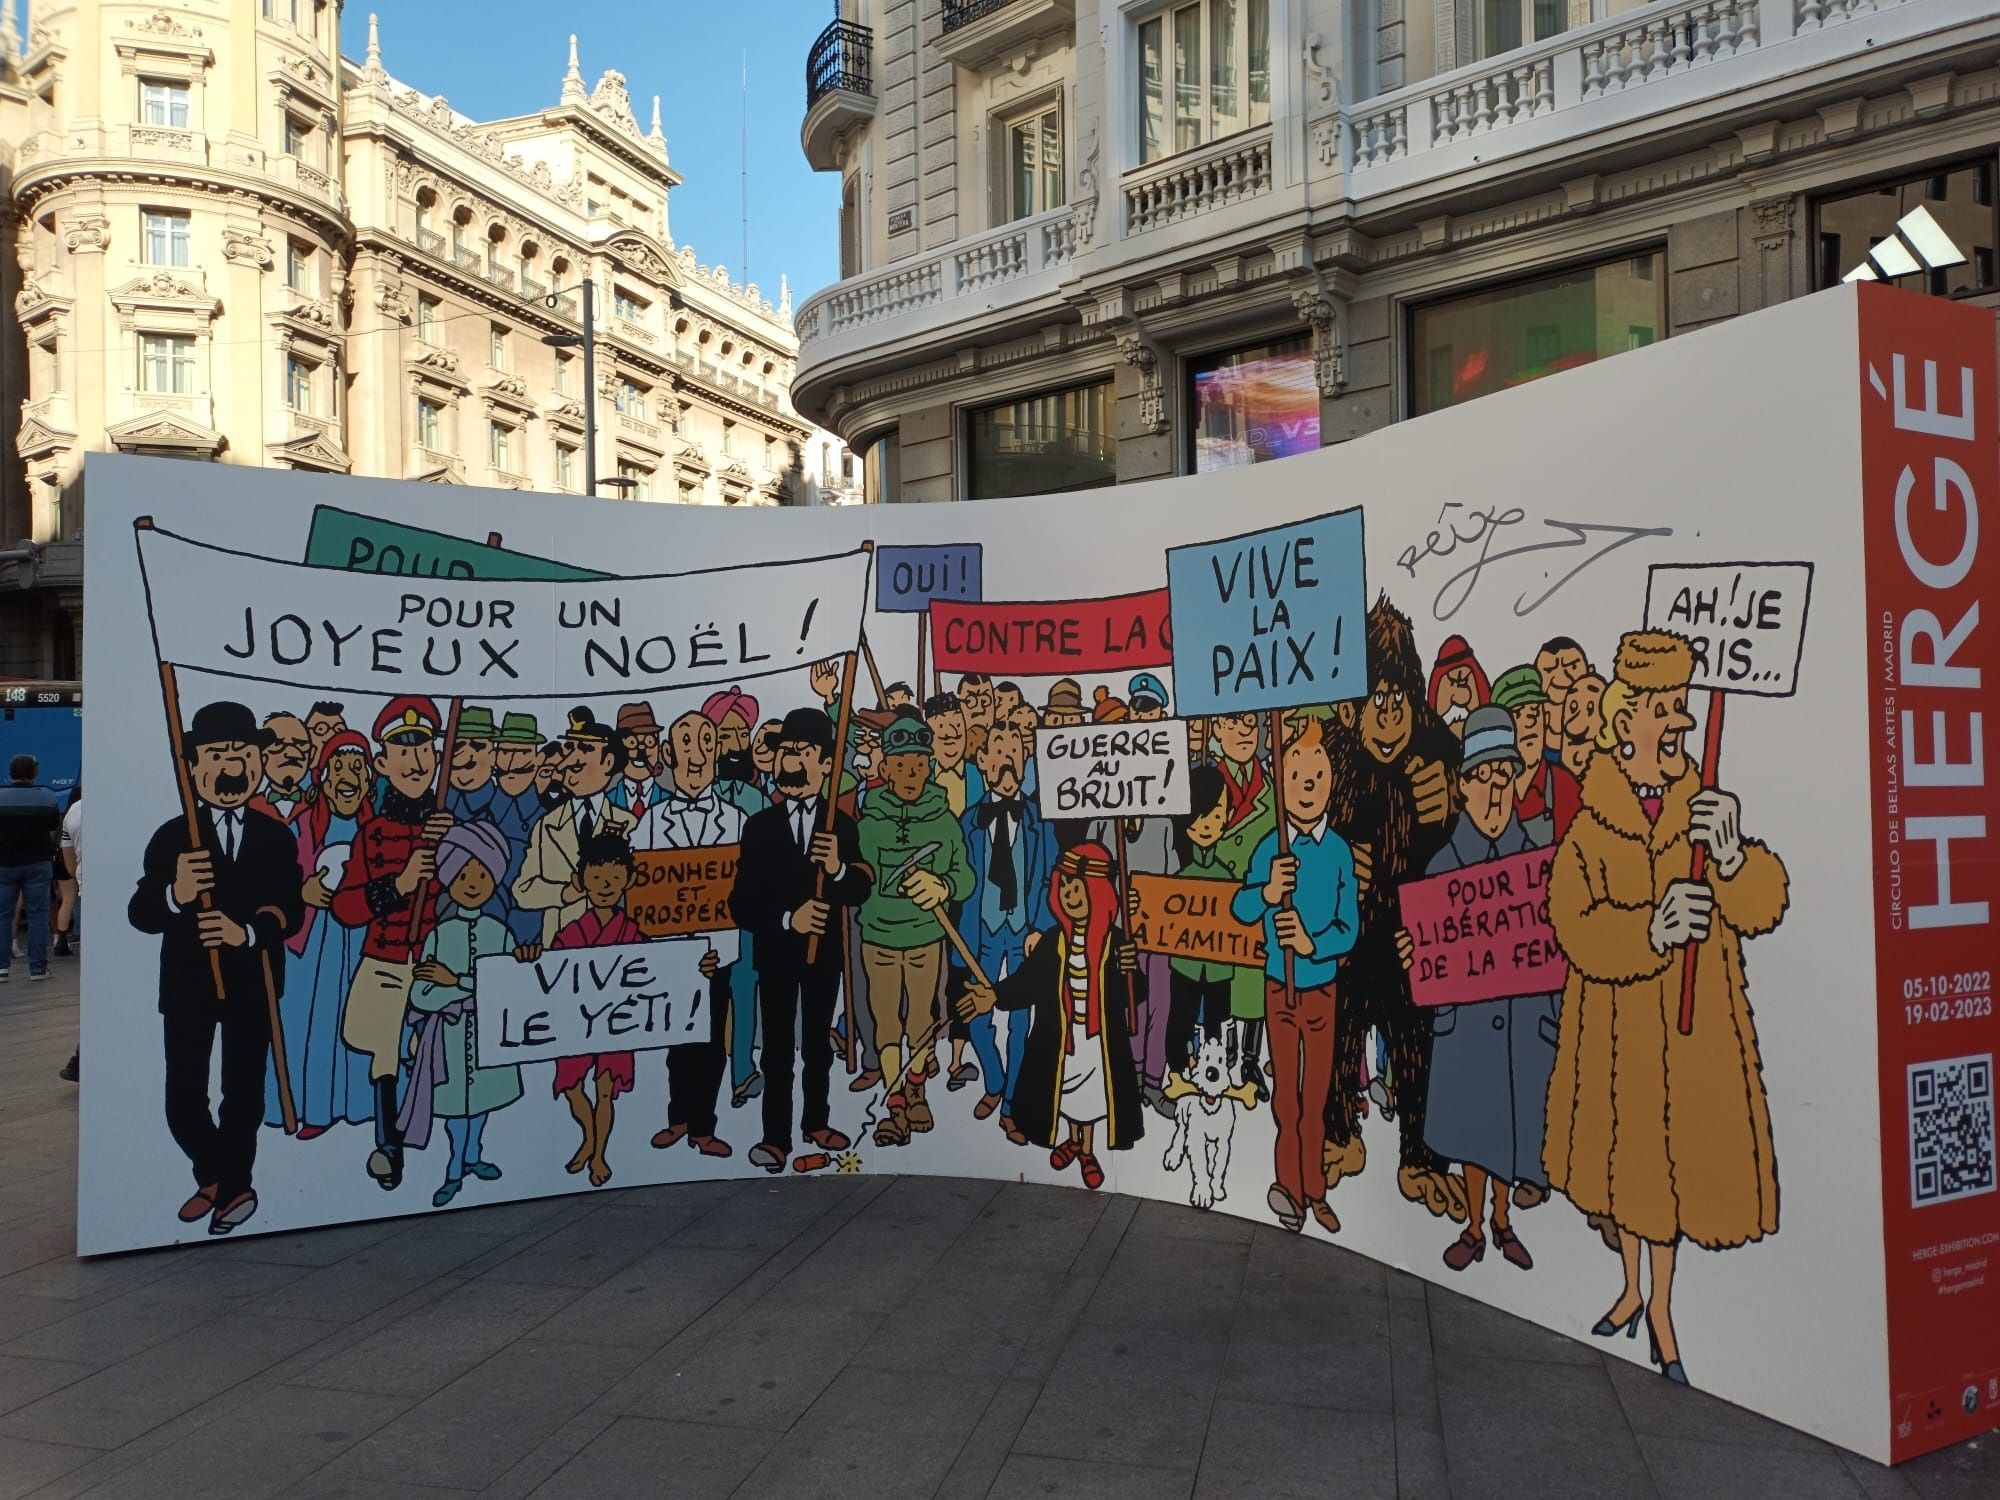 Las obras de Hergé, el creador de Tintín, llegan al Círculo de Bellas Artes de Madrid